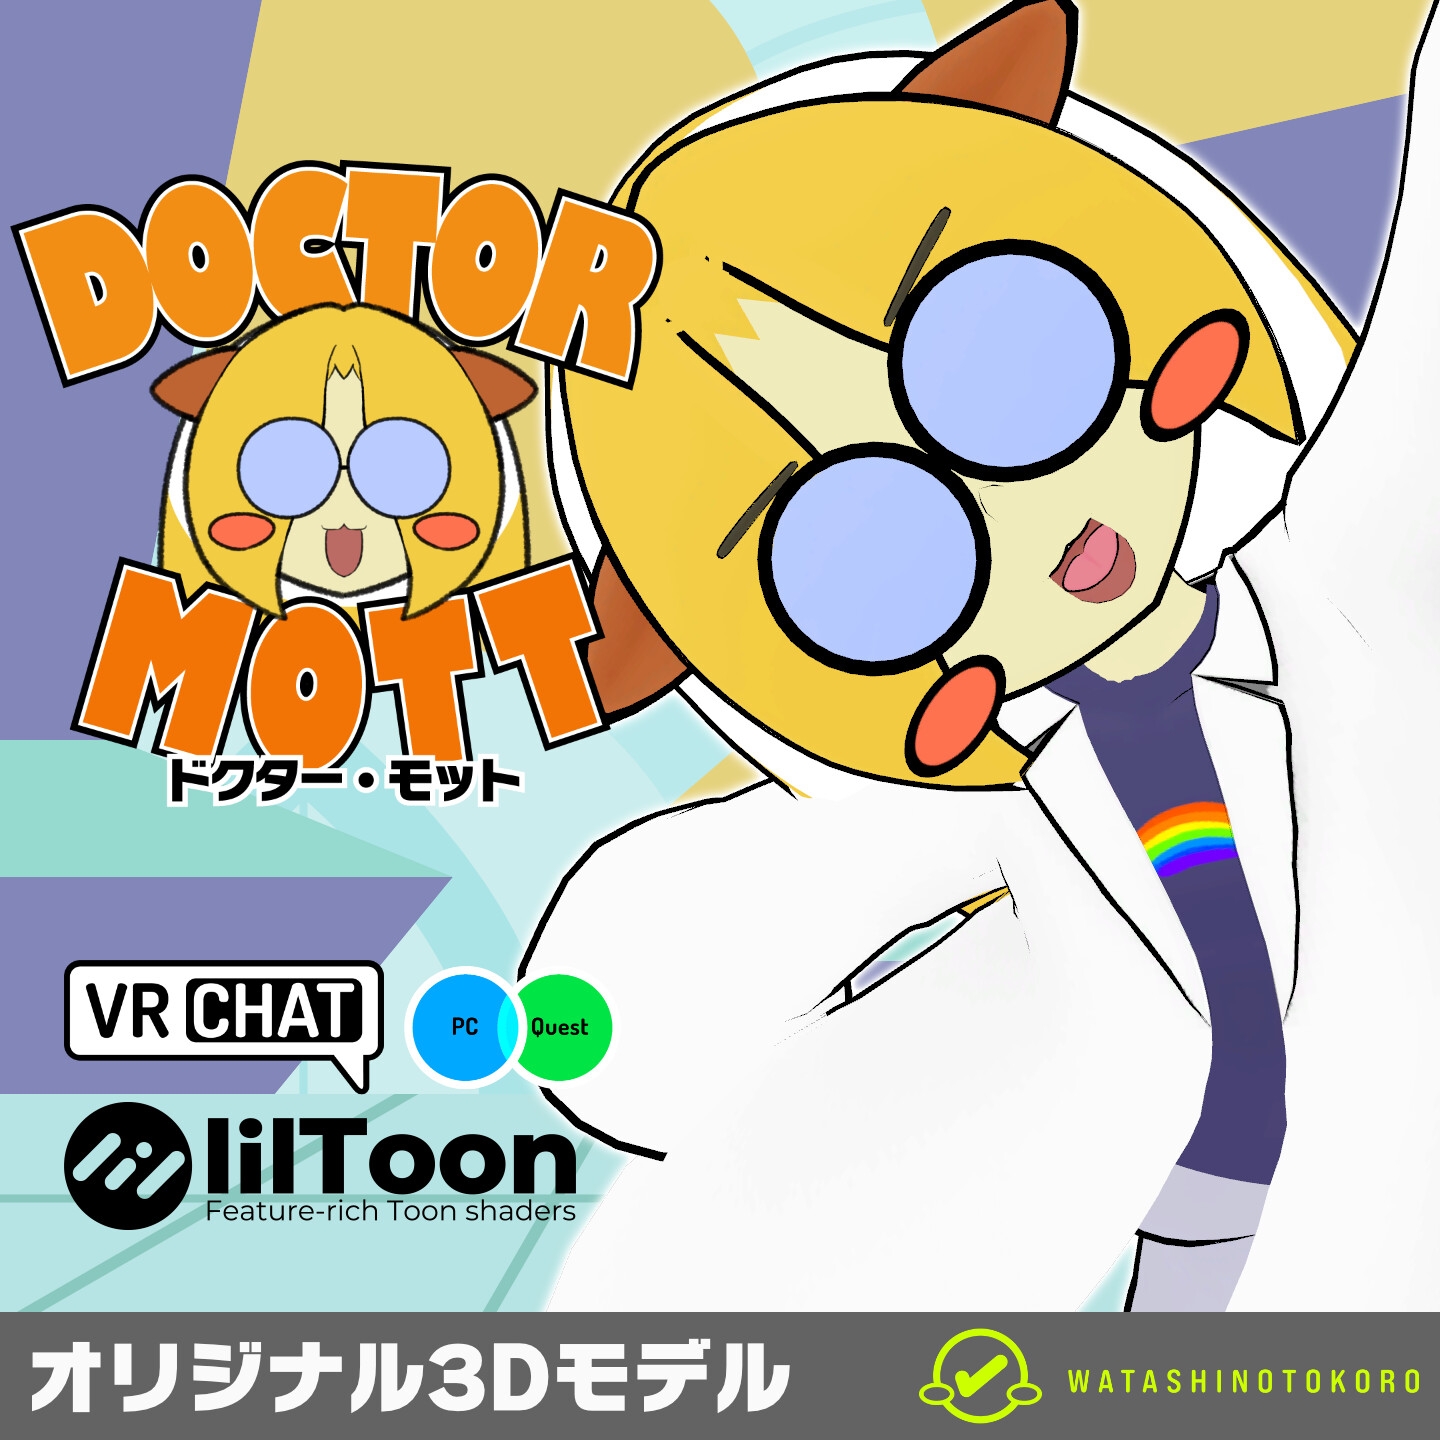 ドクター・モット (Doctor Mott) - オリジナル3Dモデル